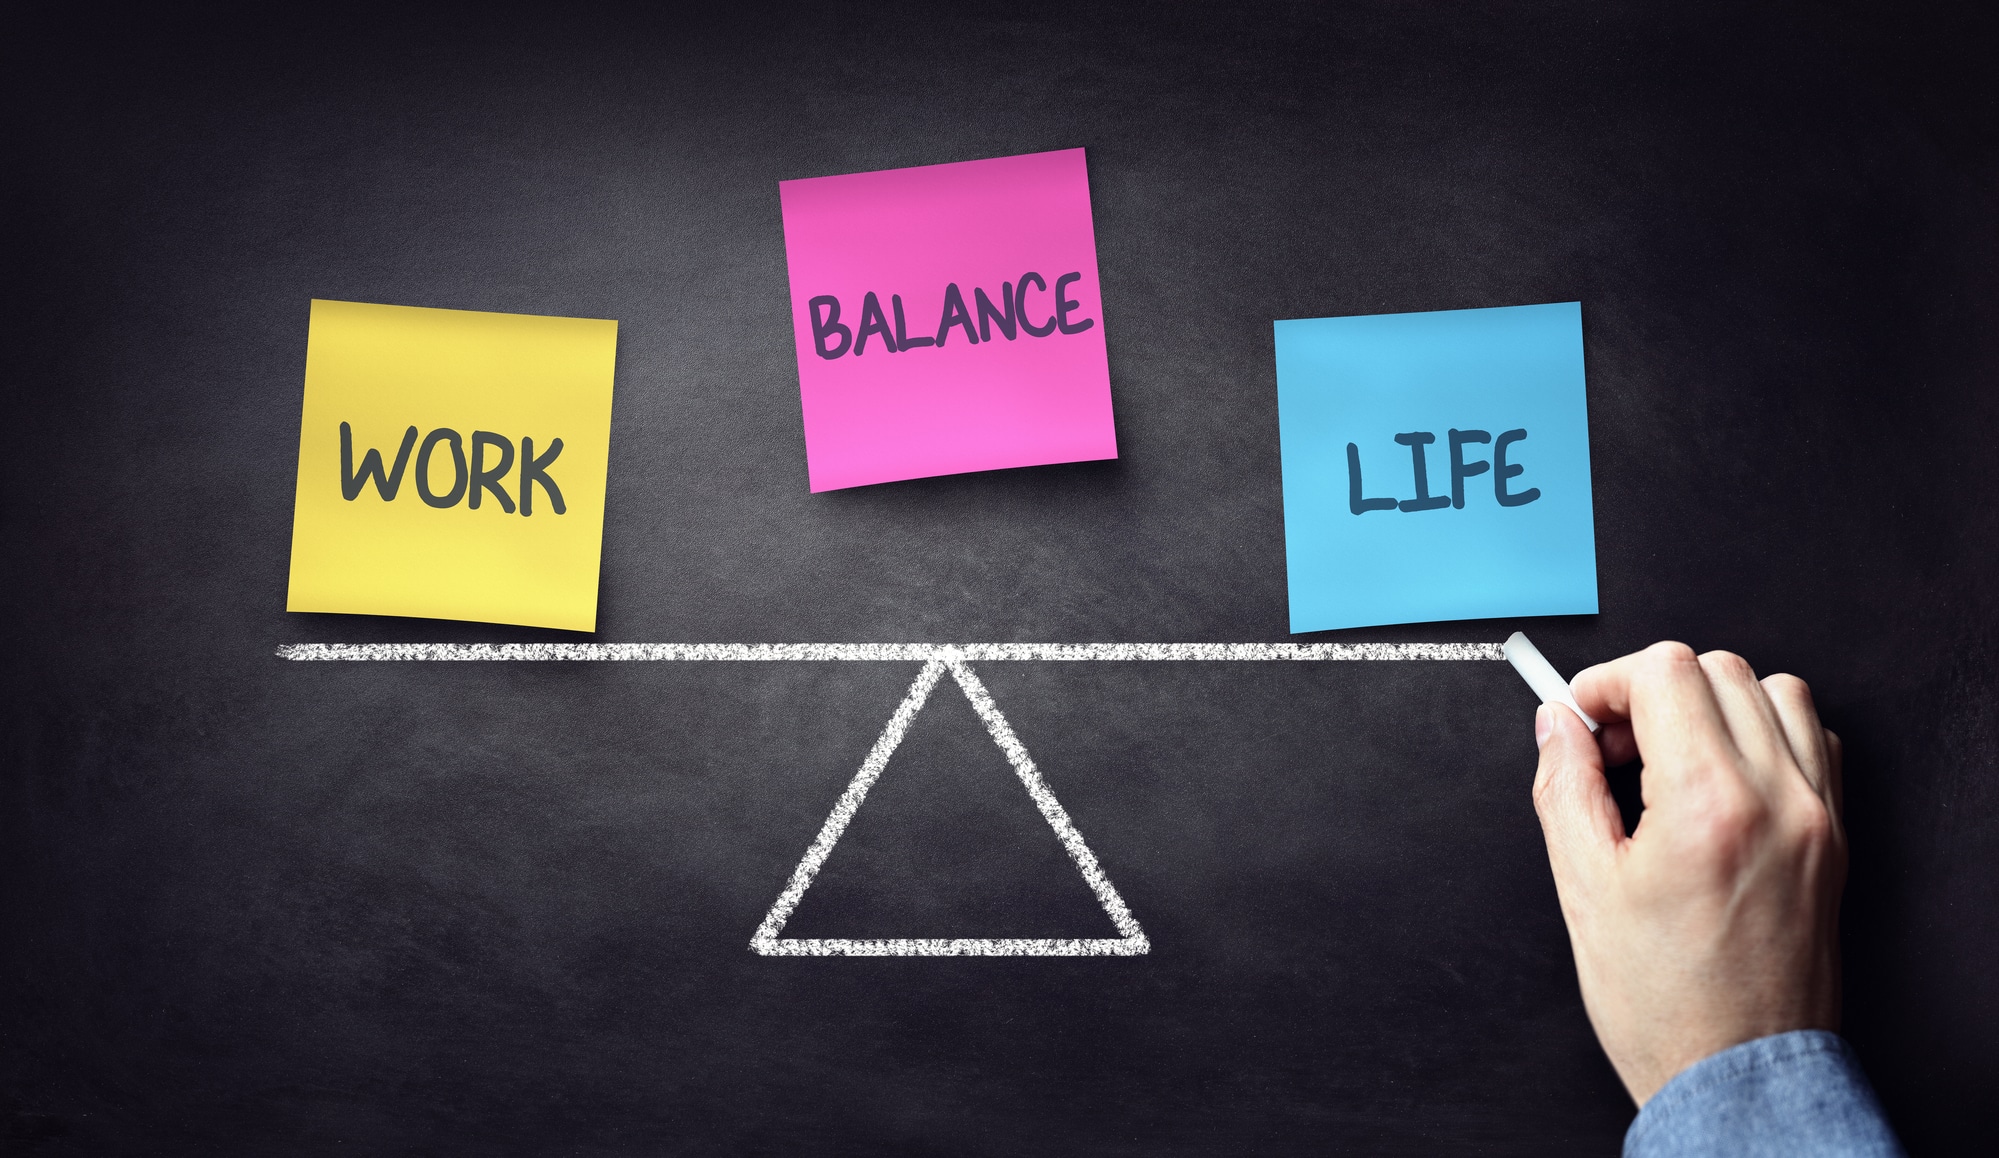 Work my best. Work-Life Balance. Баланс между работой и личной жизнью. Ворк лайф баланс. Work Life баланс что это.